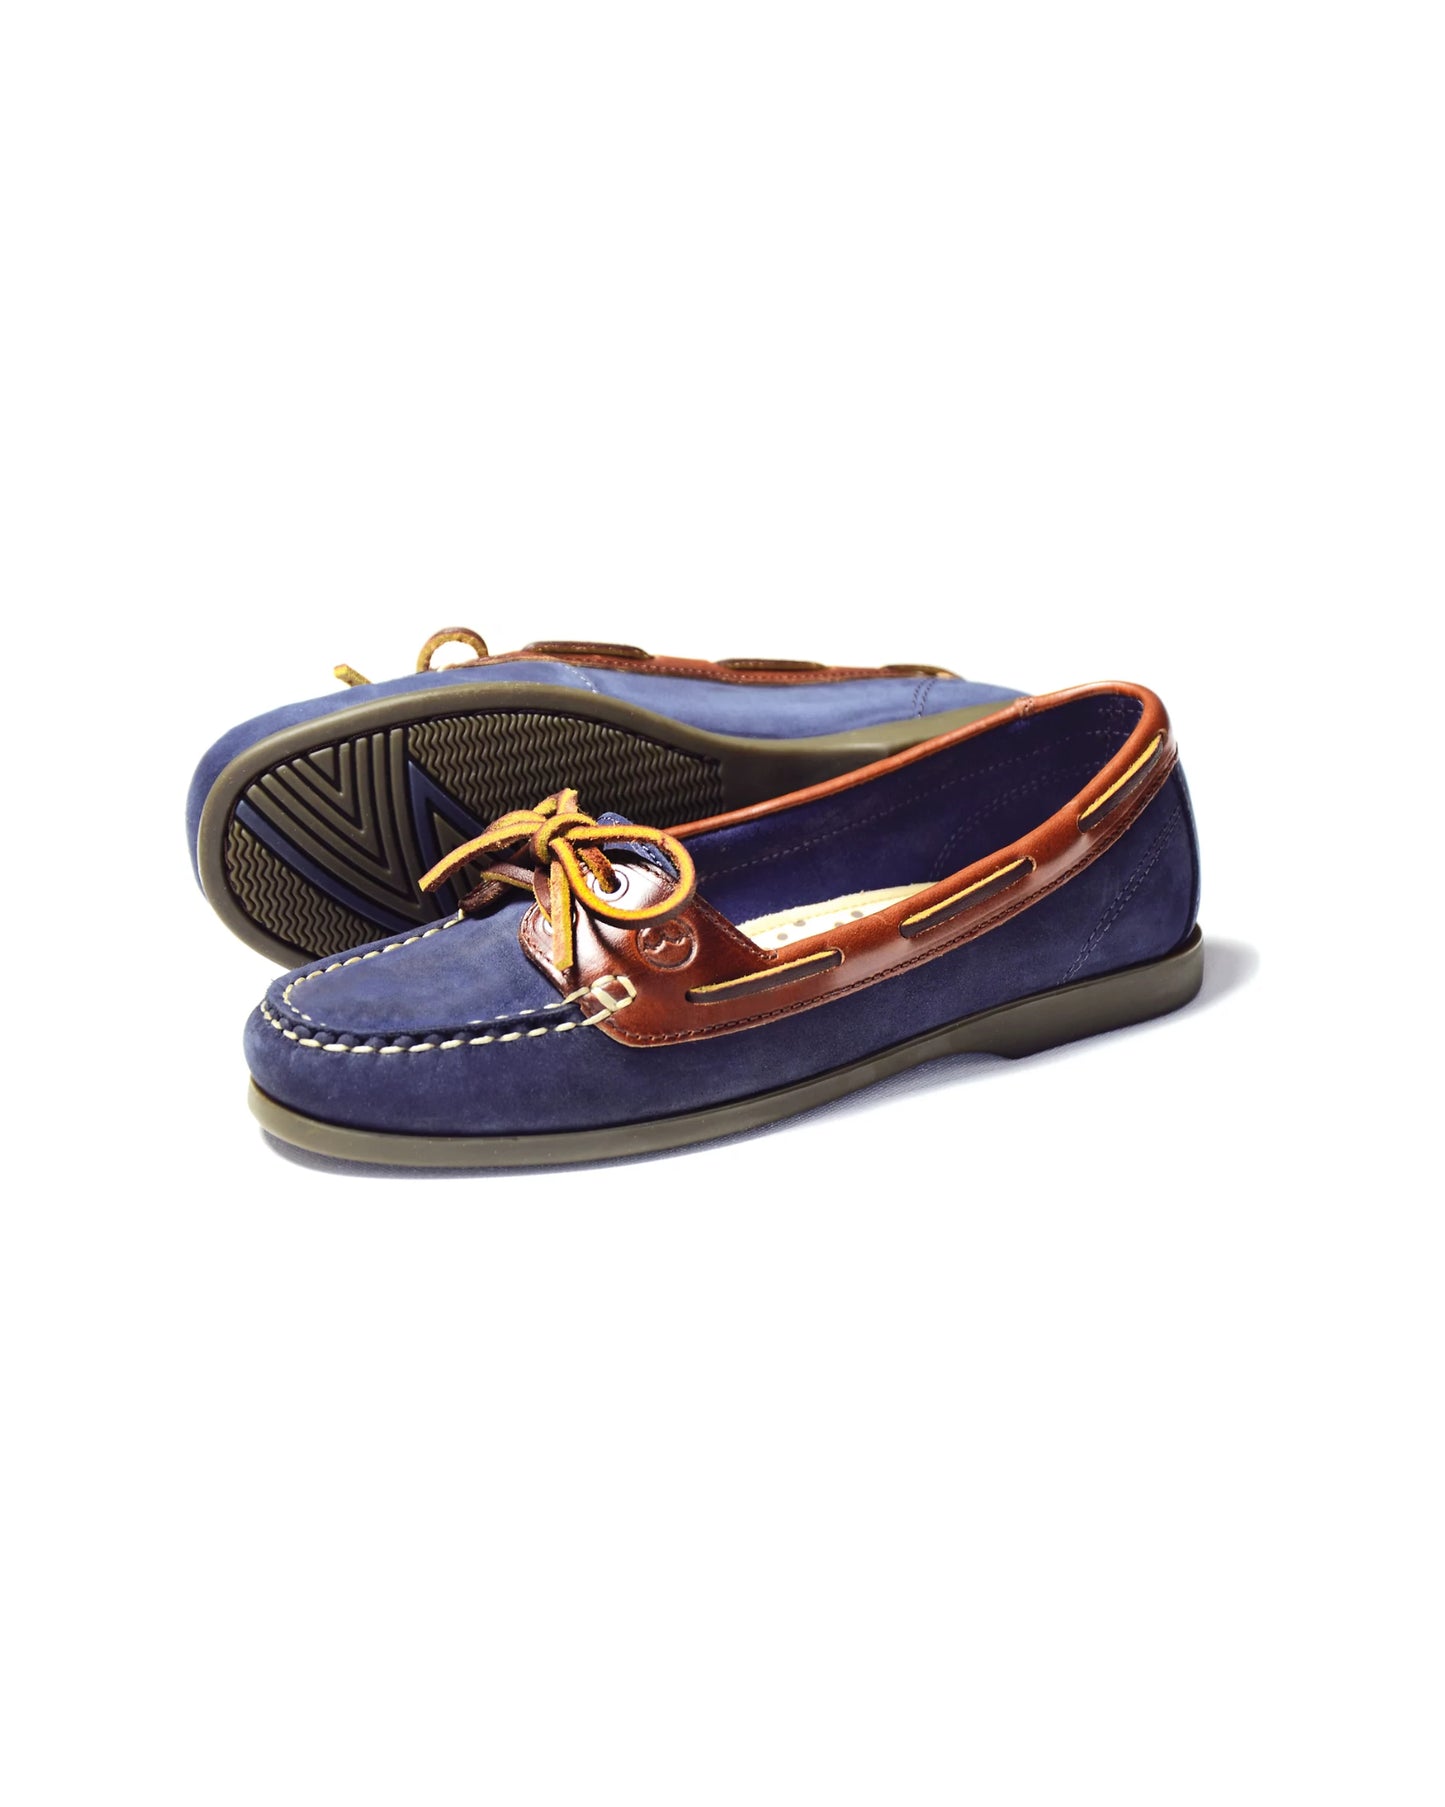 Schooner Deck Shoe - Navy/Oak